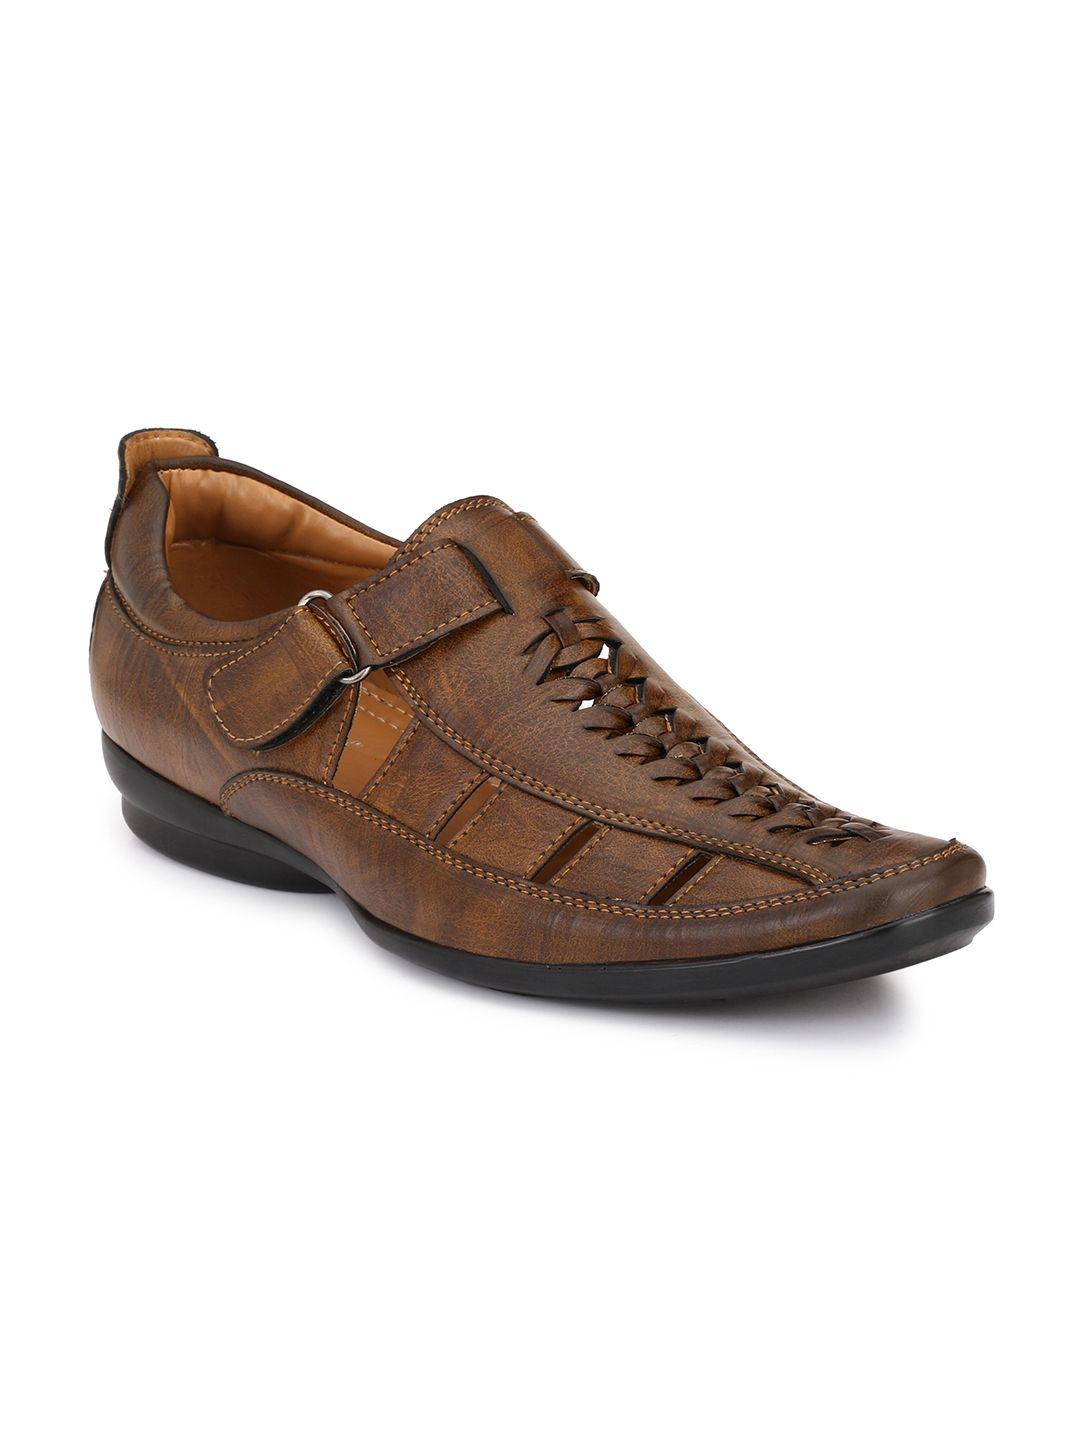 el paso men brown shoe-style sandals